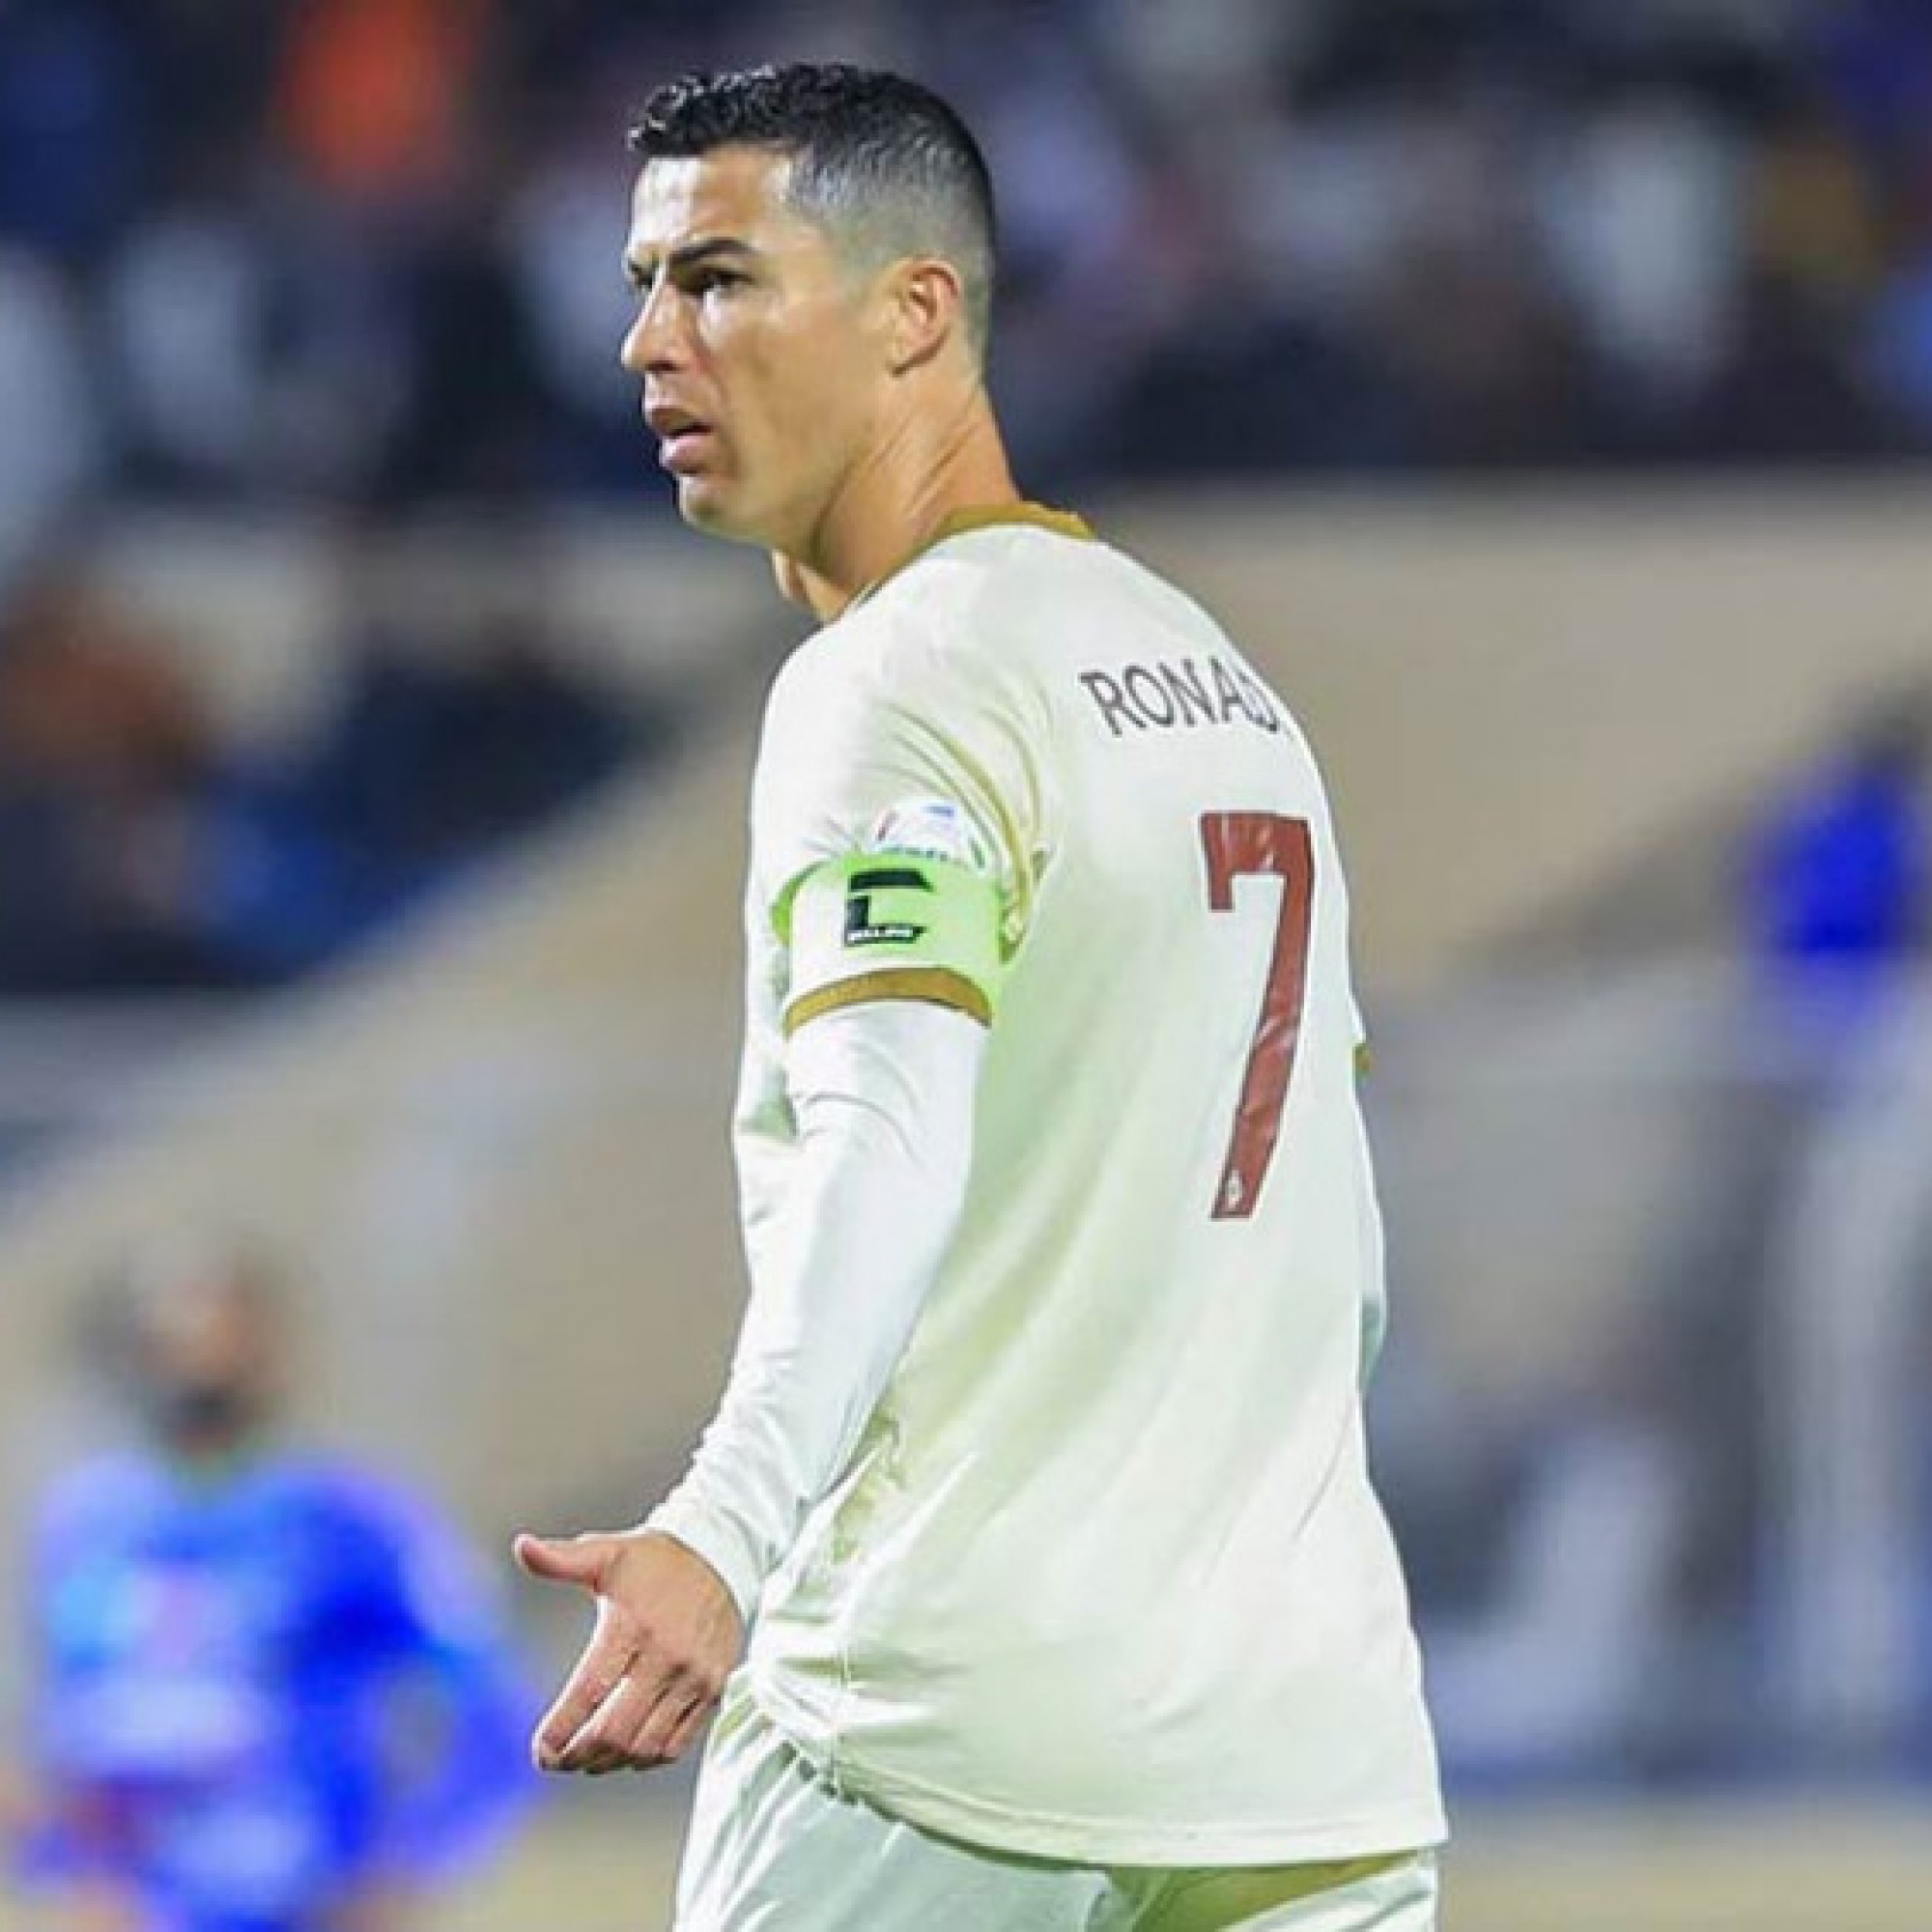  - Ronaldo mới ghi 1 bàn được đồng đội bào chữa, không làm gì vẫn quyên tiền nạn nhân động đất